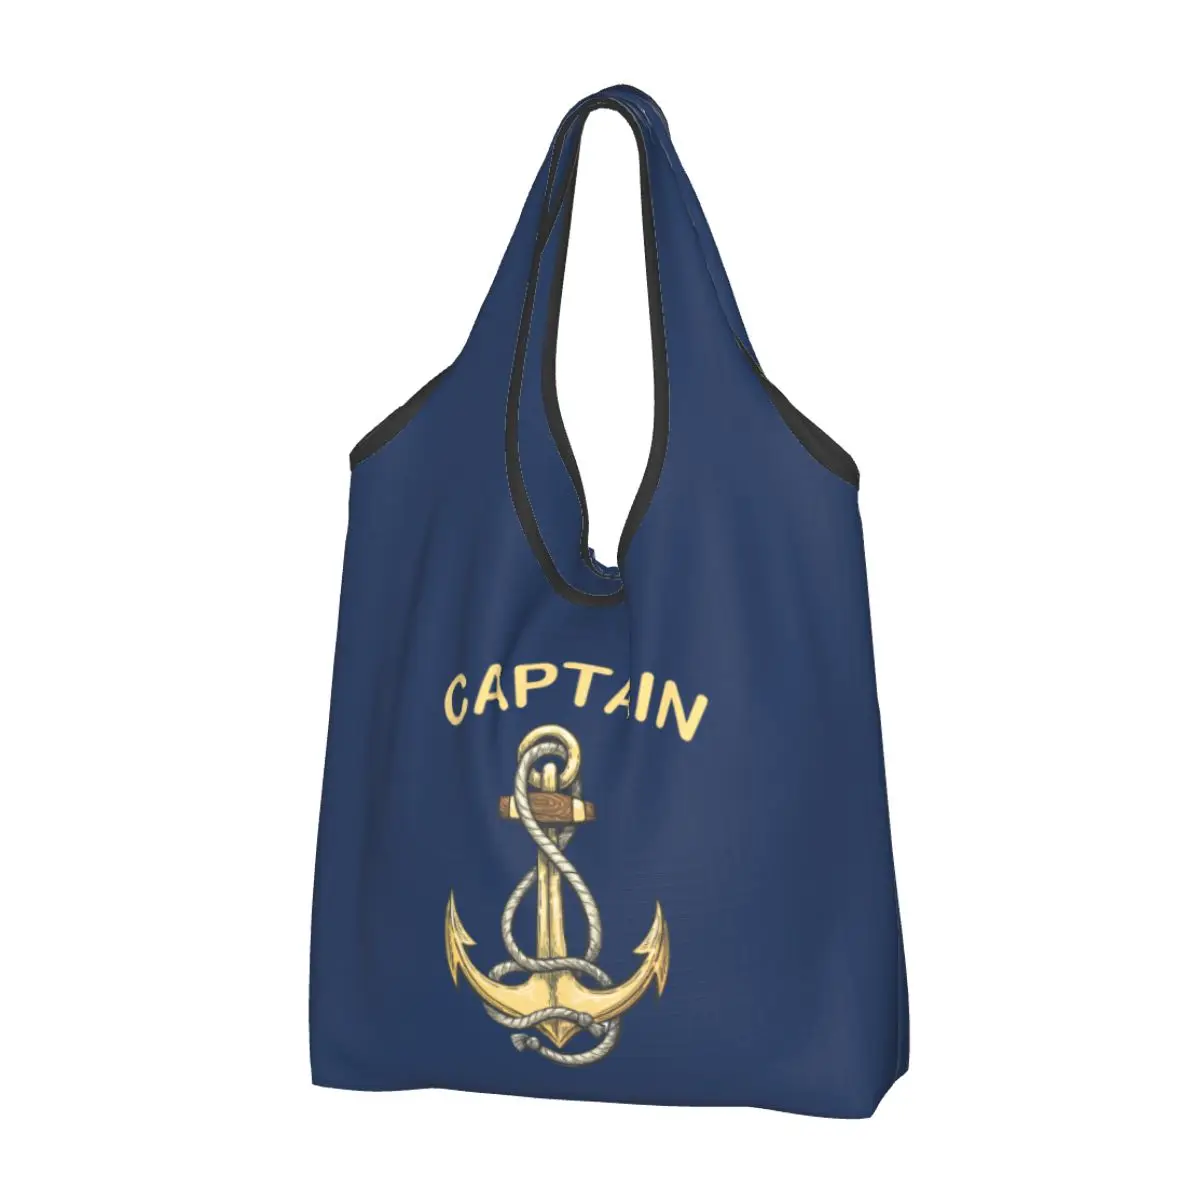 

Cute Nautical Captain Anchor Shopping Tote Bag Portable Sailor Adventure Grocery Shoulder Shopper Bag